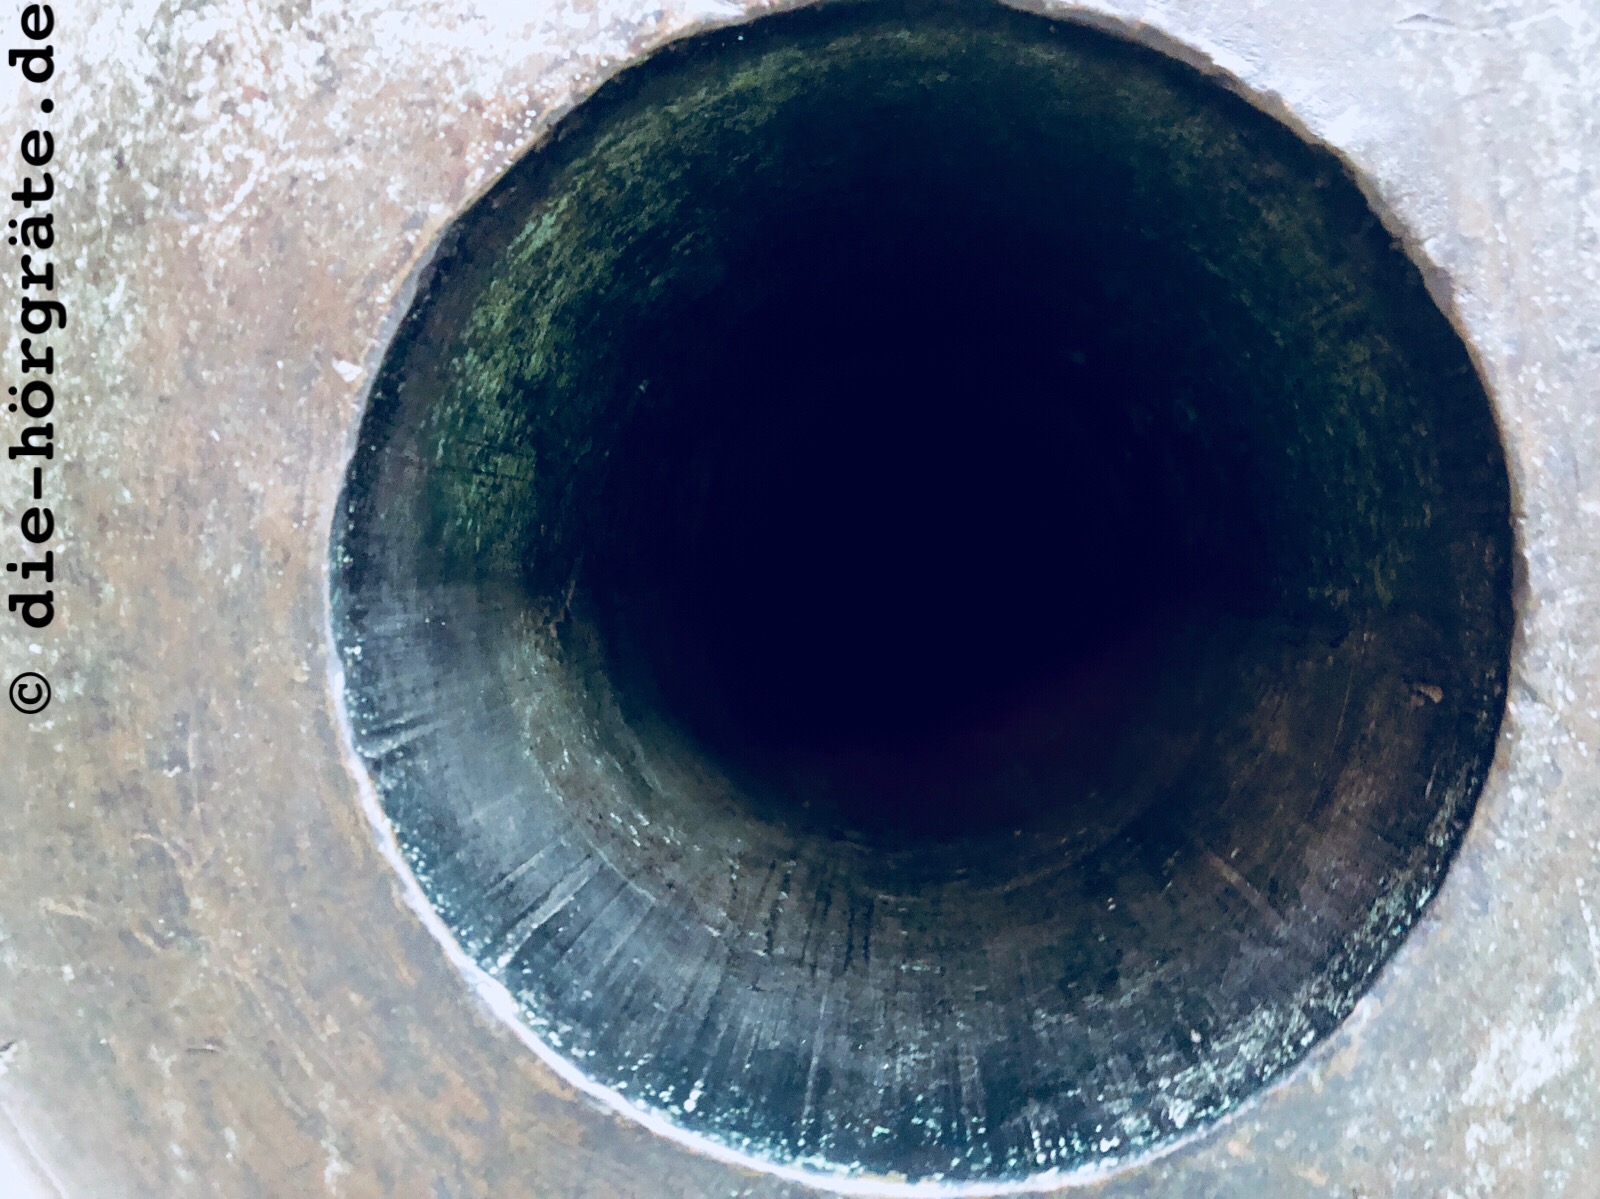 Blick in das Rohr einer Kartaune, altes Metall und ein schwarzes Loch